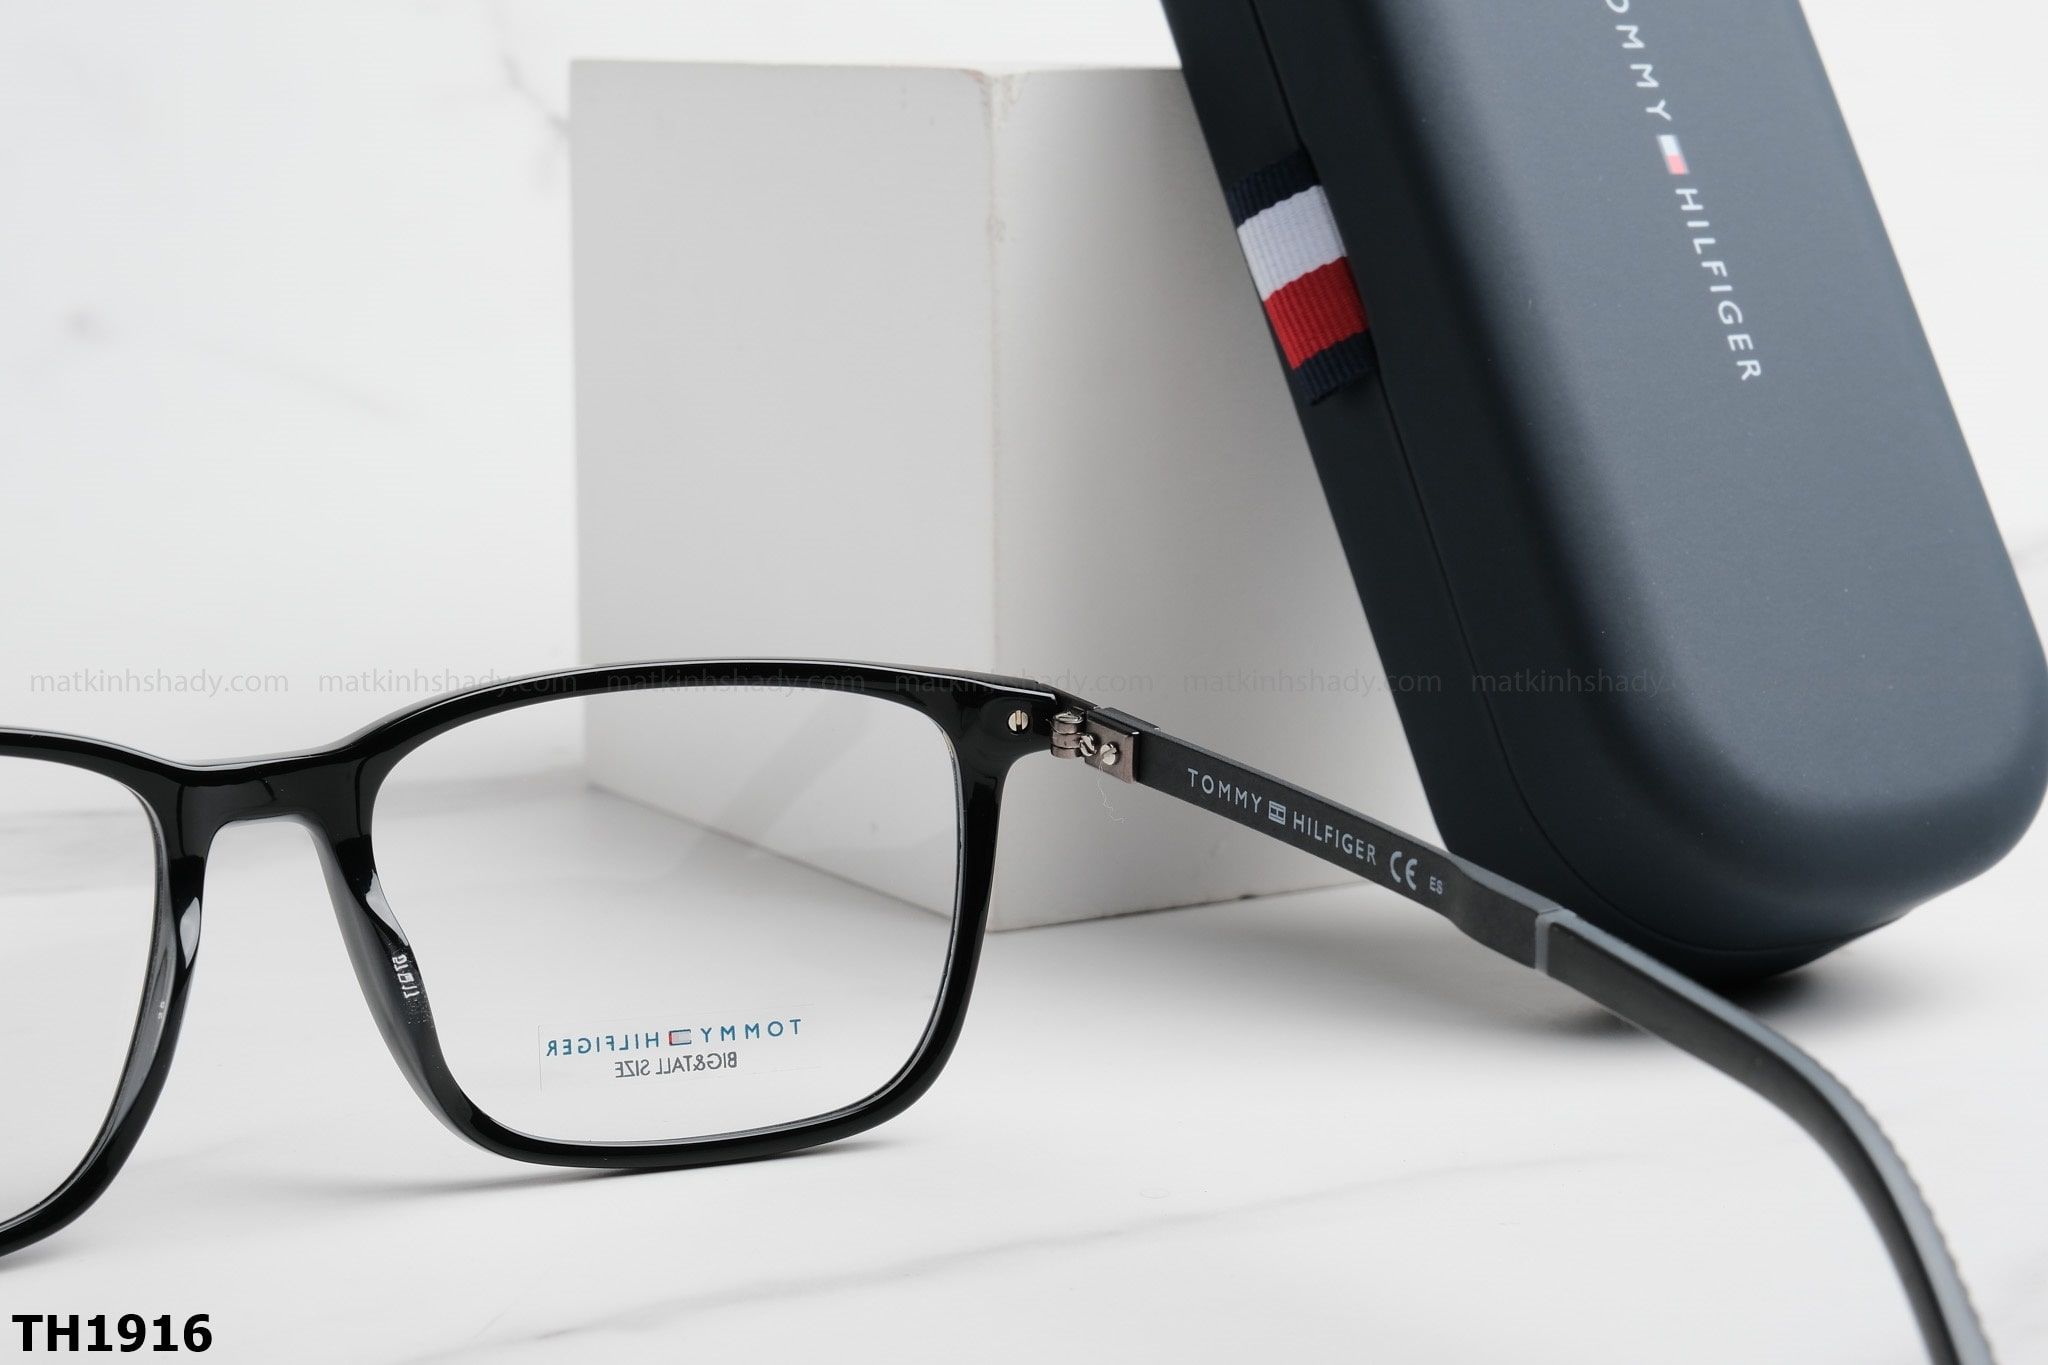  Tommy Hilfiger Eyewear - Glasses - TH1916 